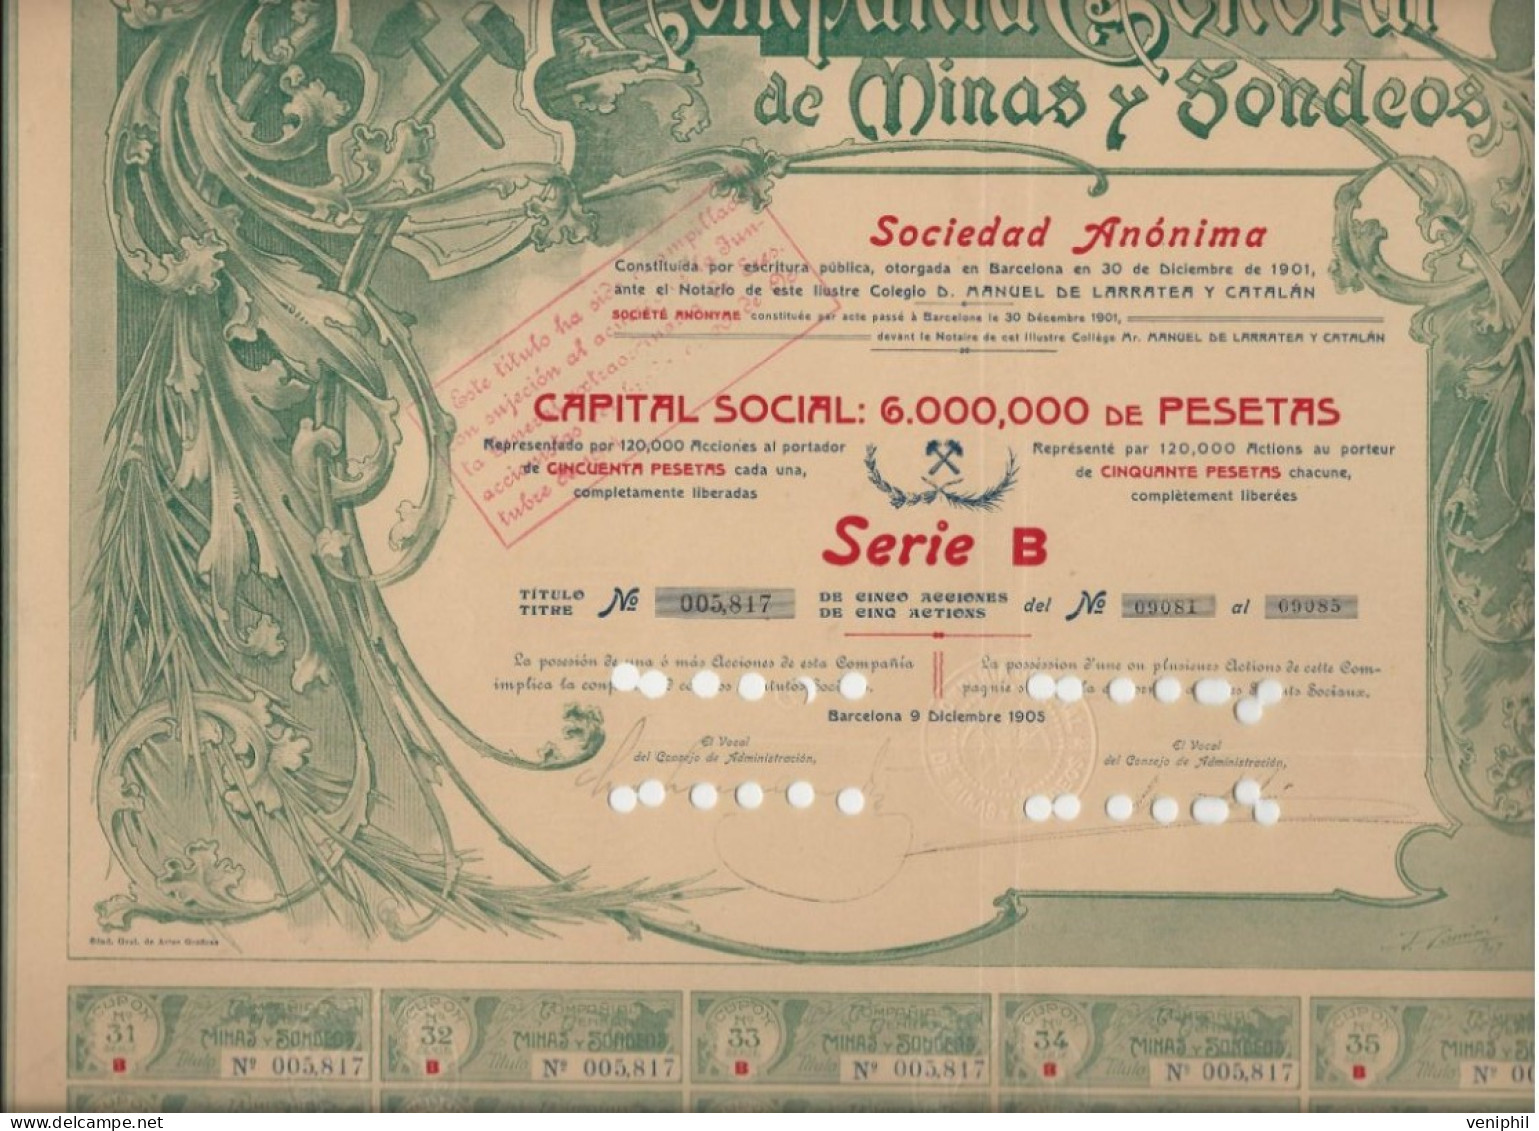 COMPAGNIE GENERAL DES MINES Y SODEOS - TITRE DE 5 ACTIONS DE 50 PSETAS -1905 BARCELONE - Miniere